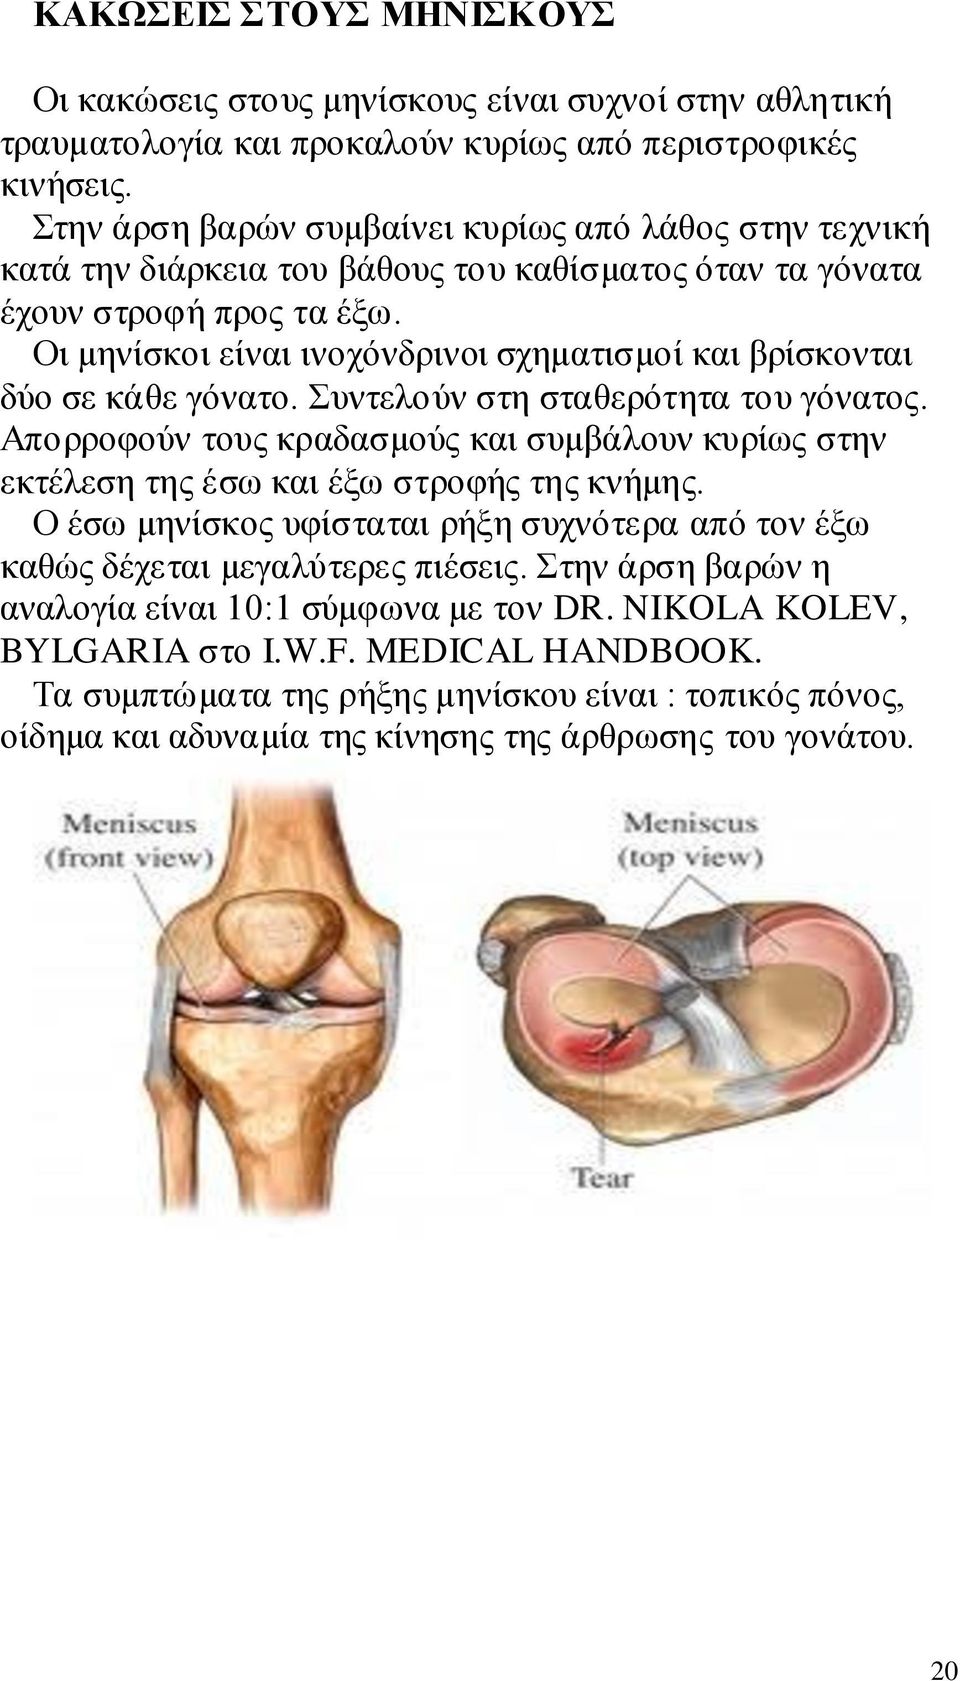 Οι μηνίσκοι είναι ινοχόνδρινοι σχηματισμοί και βρίσκονται δύο σε κάθε γόνατο. Συντελούν στη σταθερότητα του γόνατος.